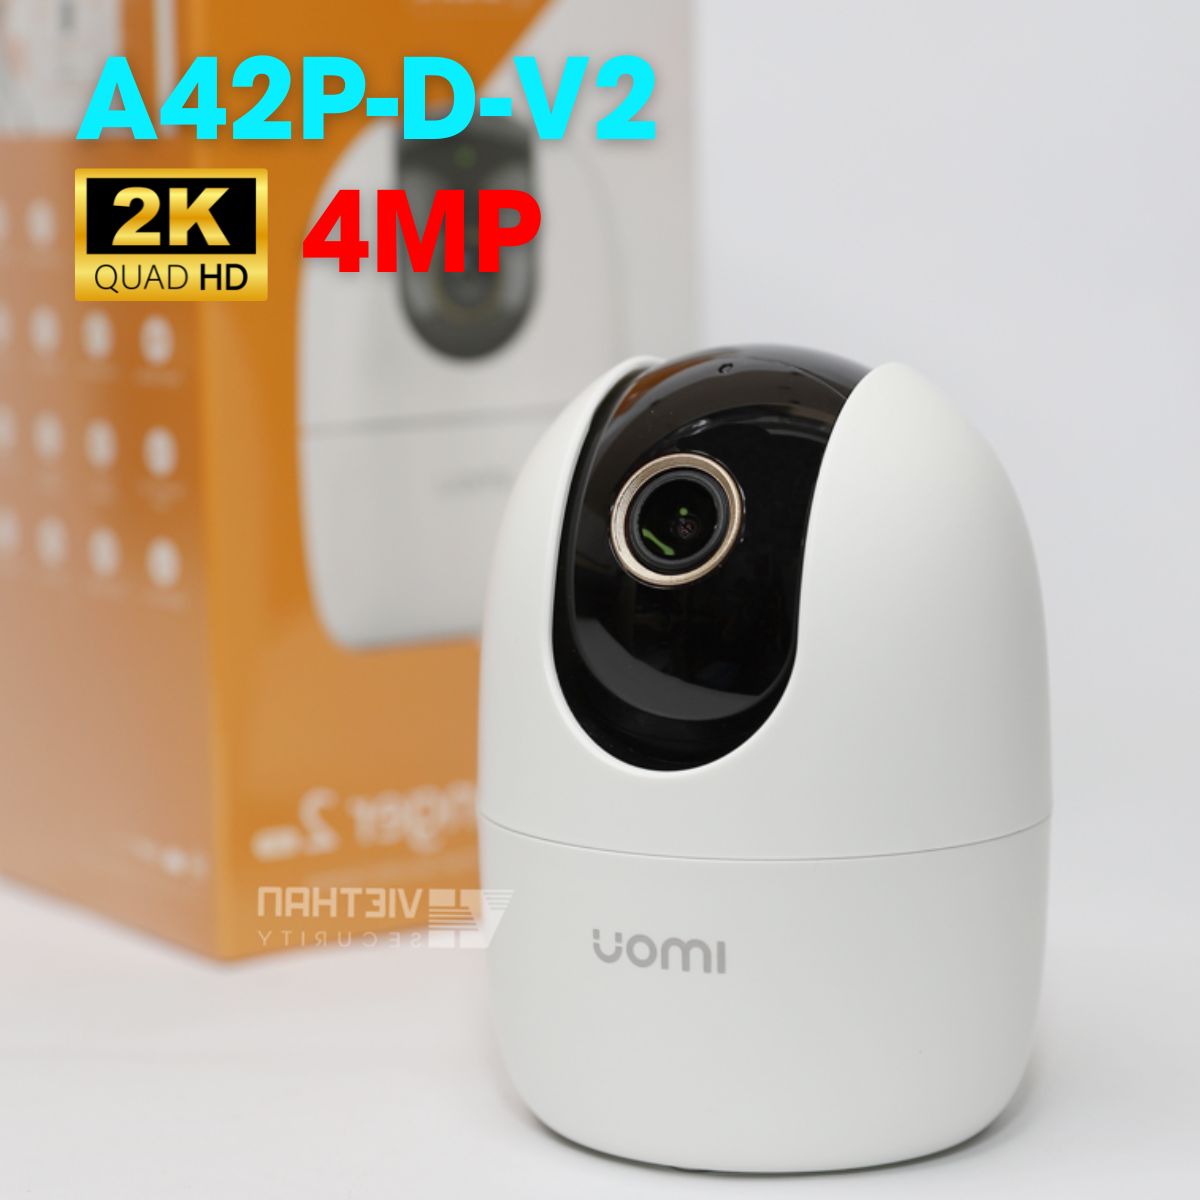 Camera wifi không dây Imou IPC-A42P-D-V2, 4MP 2K, đàm thoại 2 chiều, tích hợp còi báo động